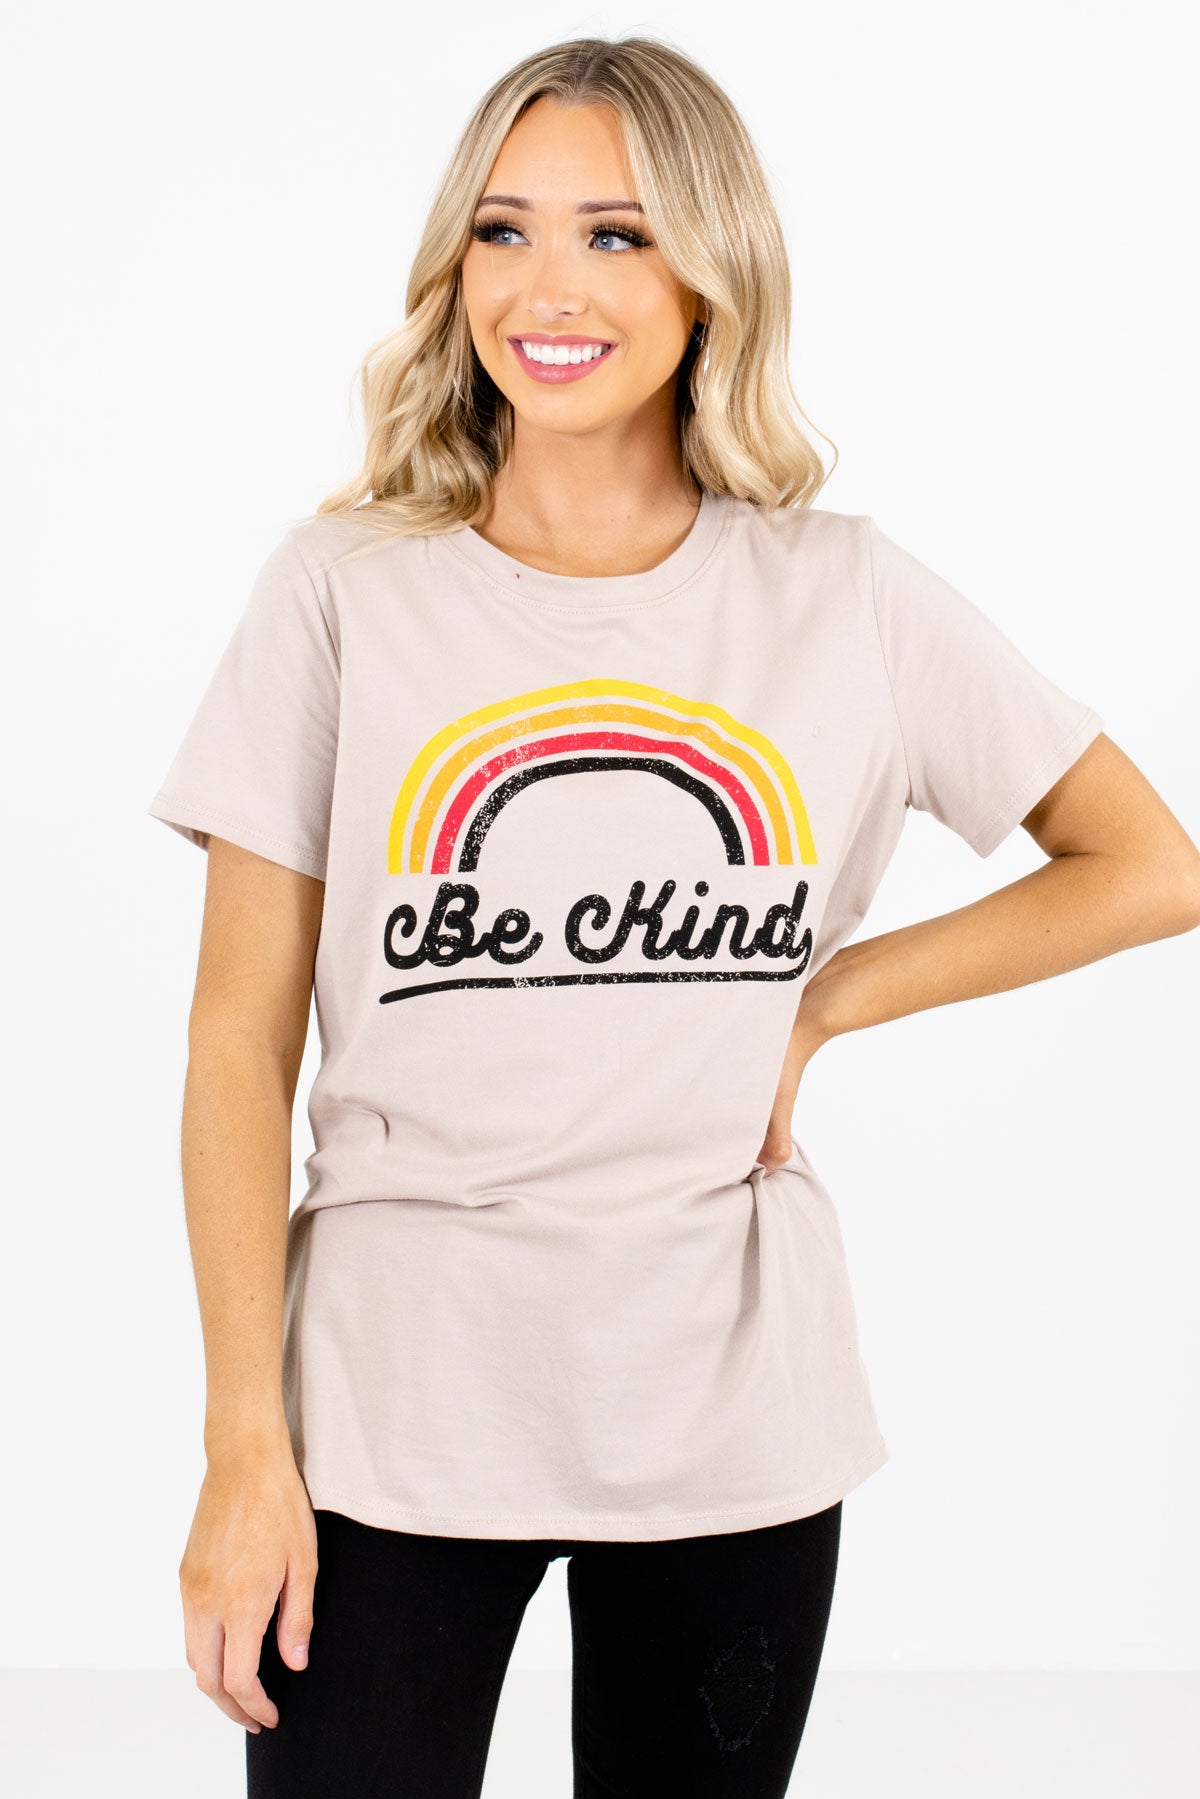 Women's Taupe Brown Round Neckline Boutique Graphic T-Shirt